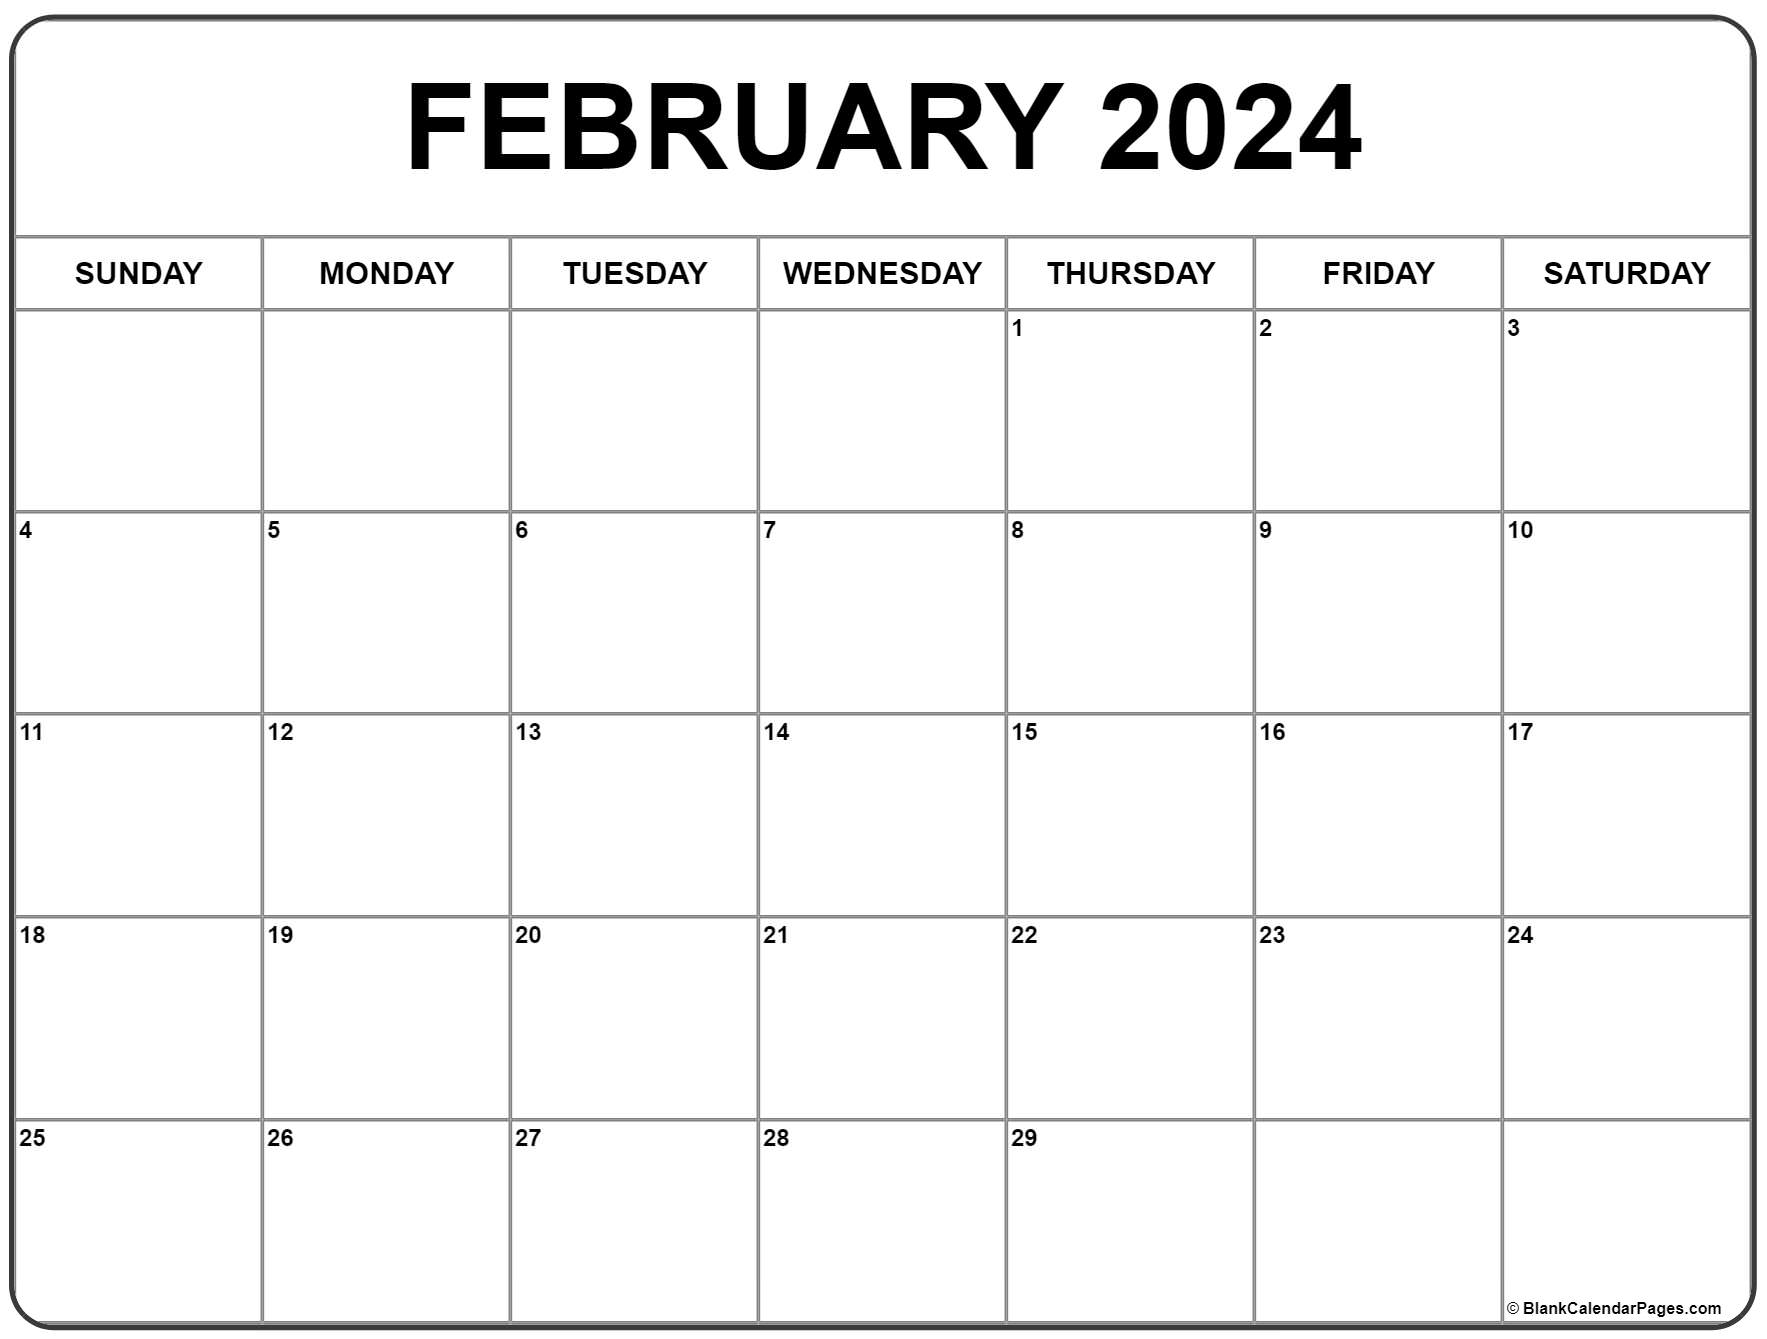 February 2024 Calendar | Free Printable Calendar for Free Printable Feb 2024 Calendar